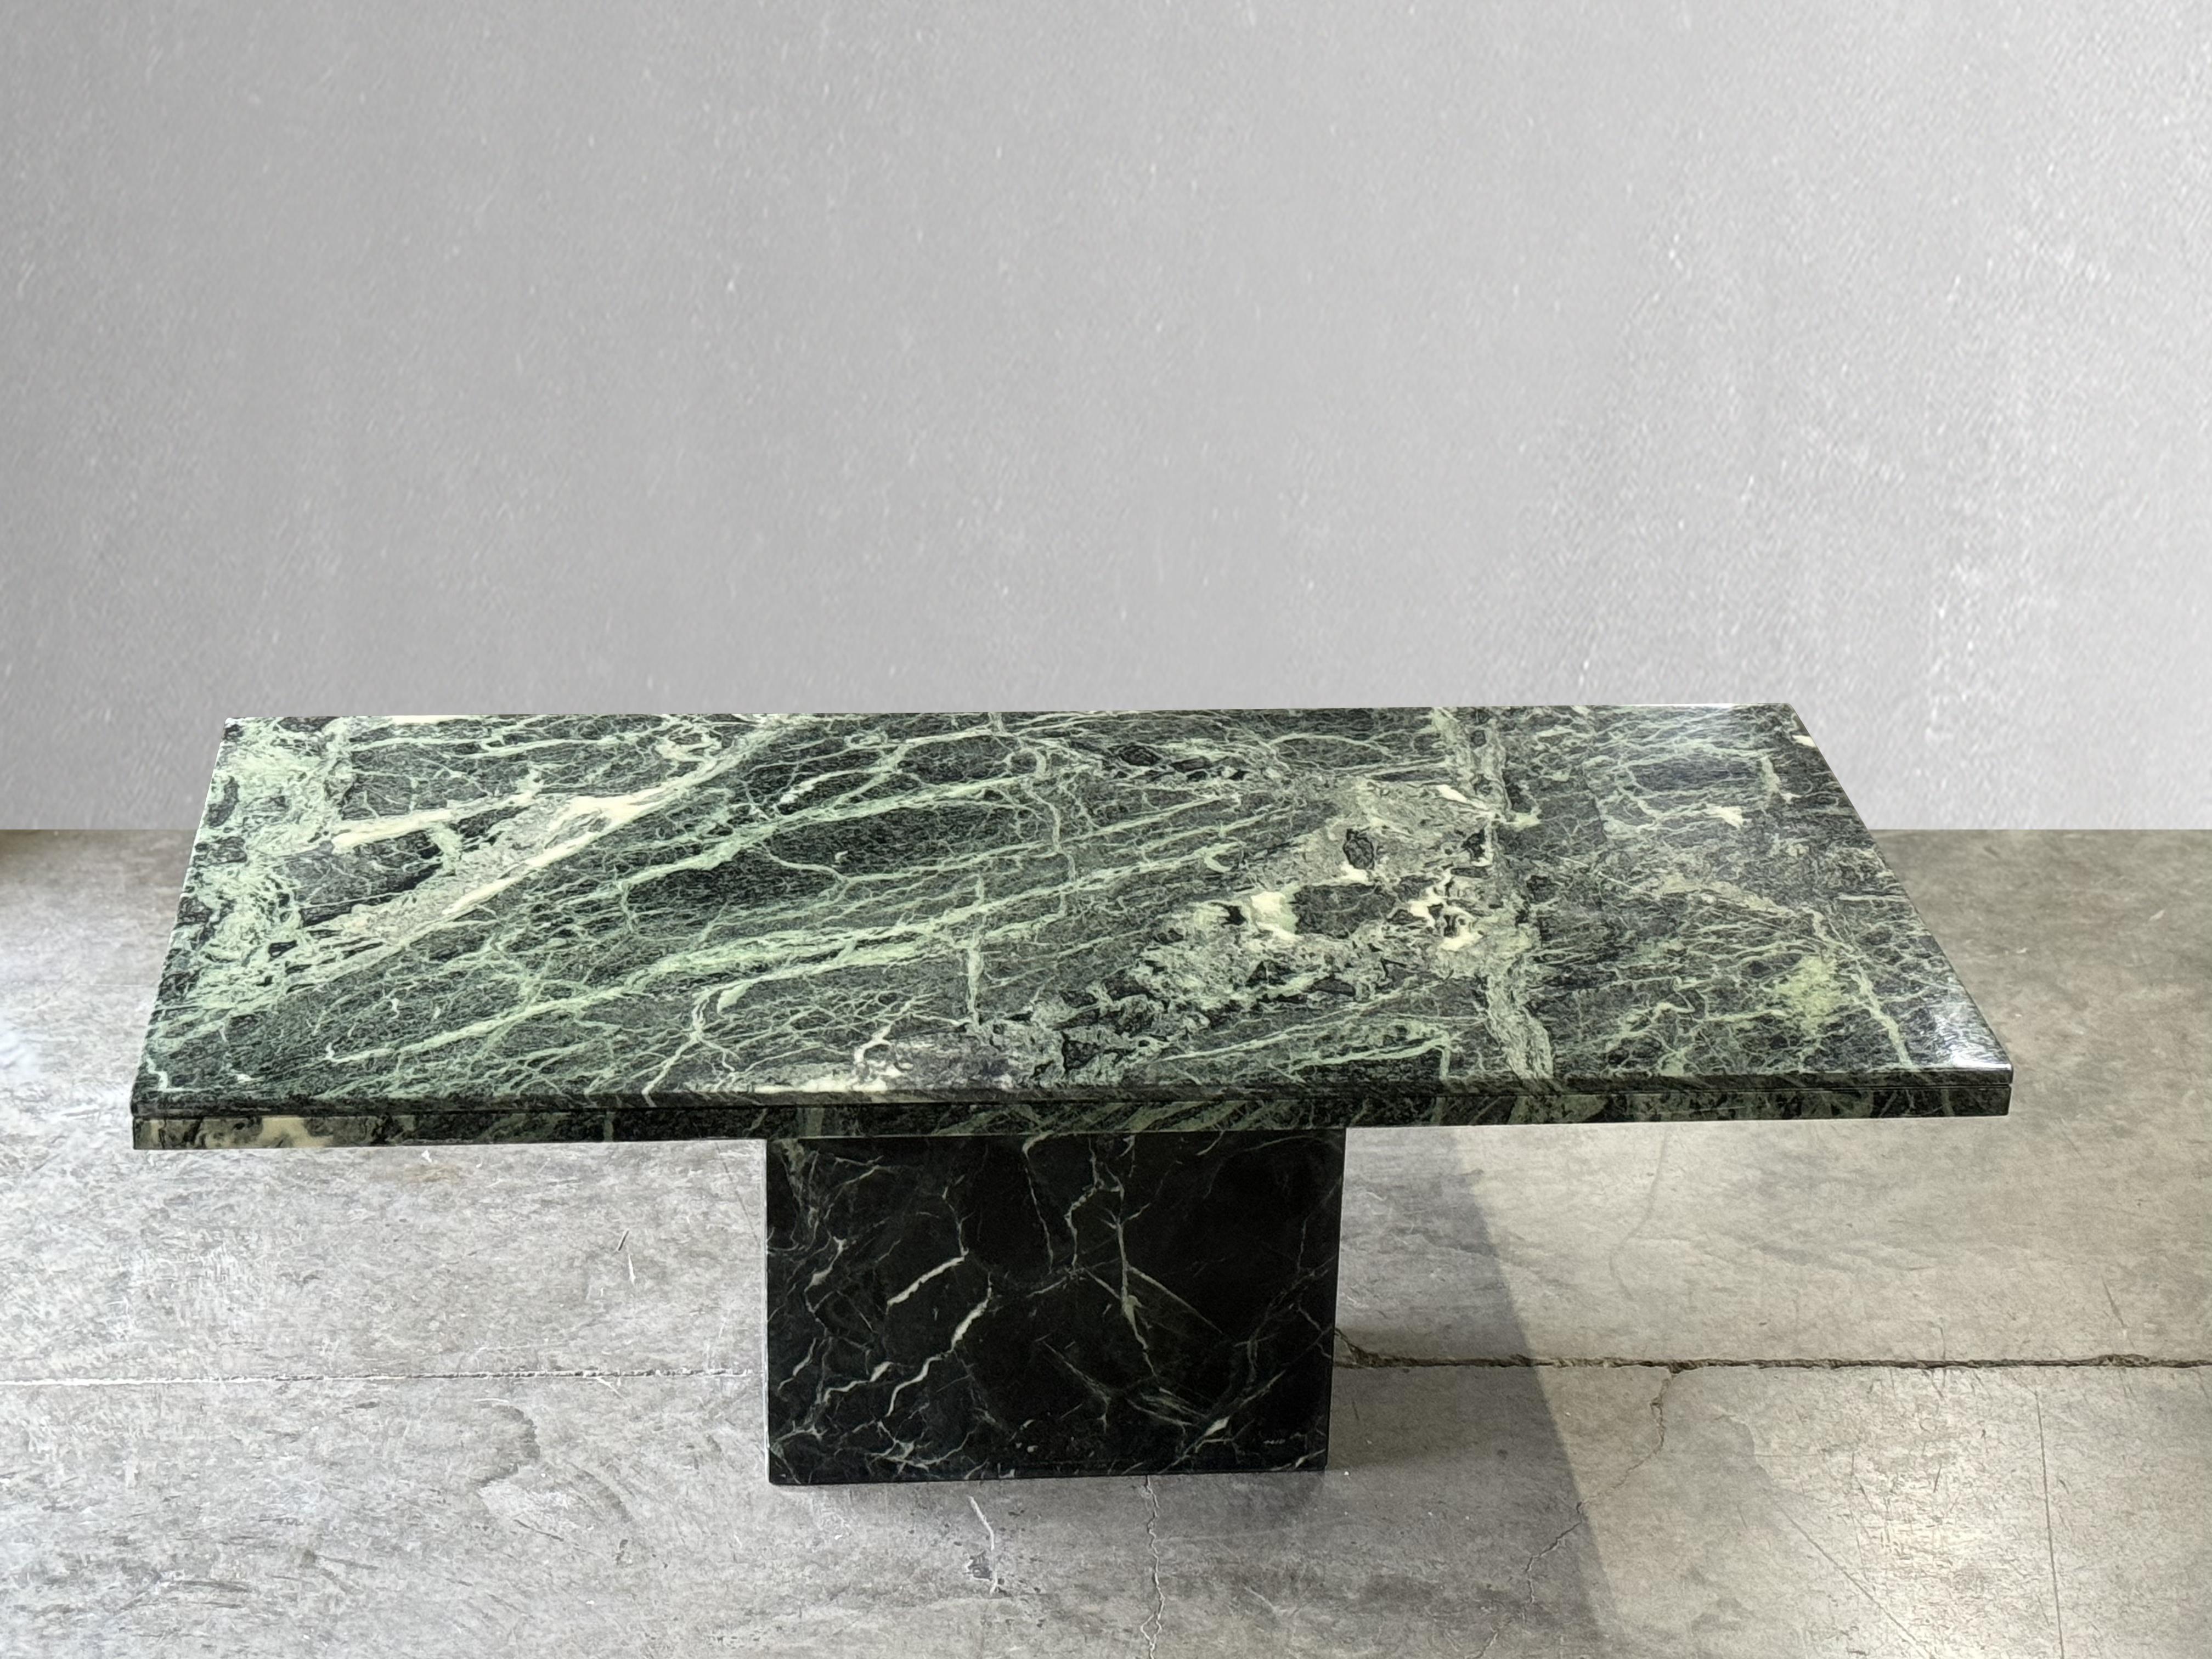 Table de salle à manger en marbre serpentin vert. 

C. 1980

Table rectangulaire en marbre vert serpentin avec de beaux détails sur les bords et une base assortie. J'aime le mouvement naturel et les différentes nuances de vert. Se marie bien avec de